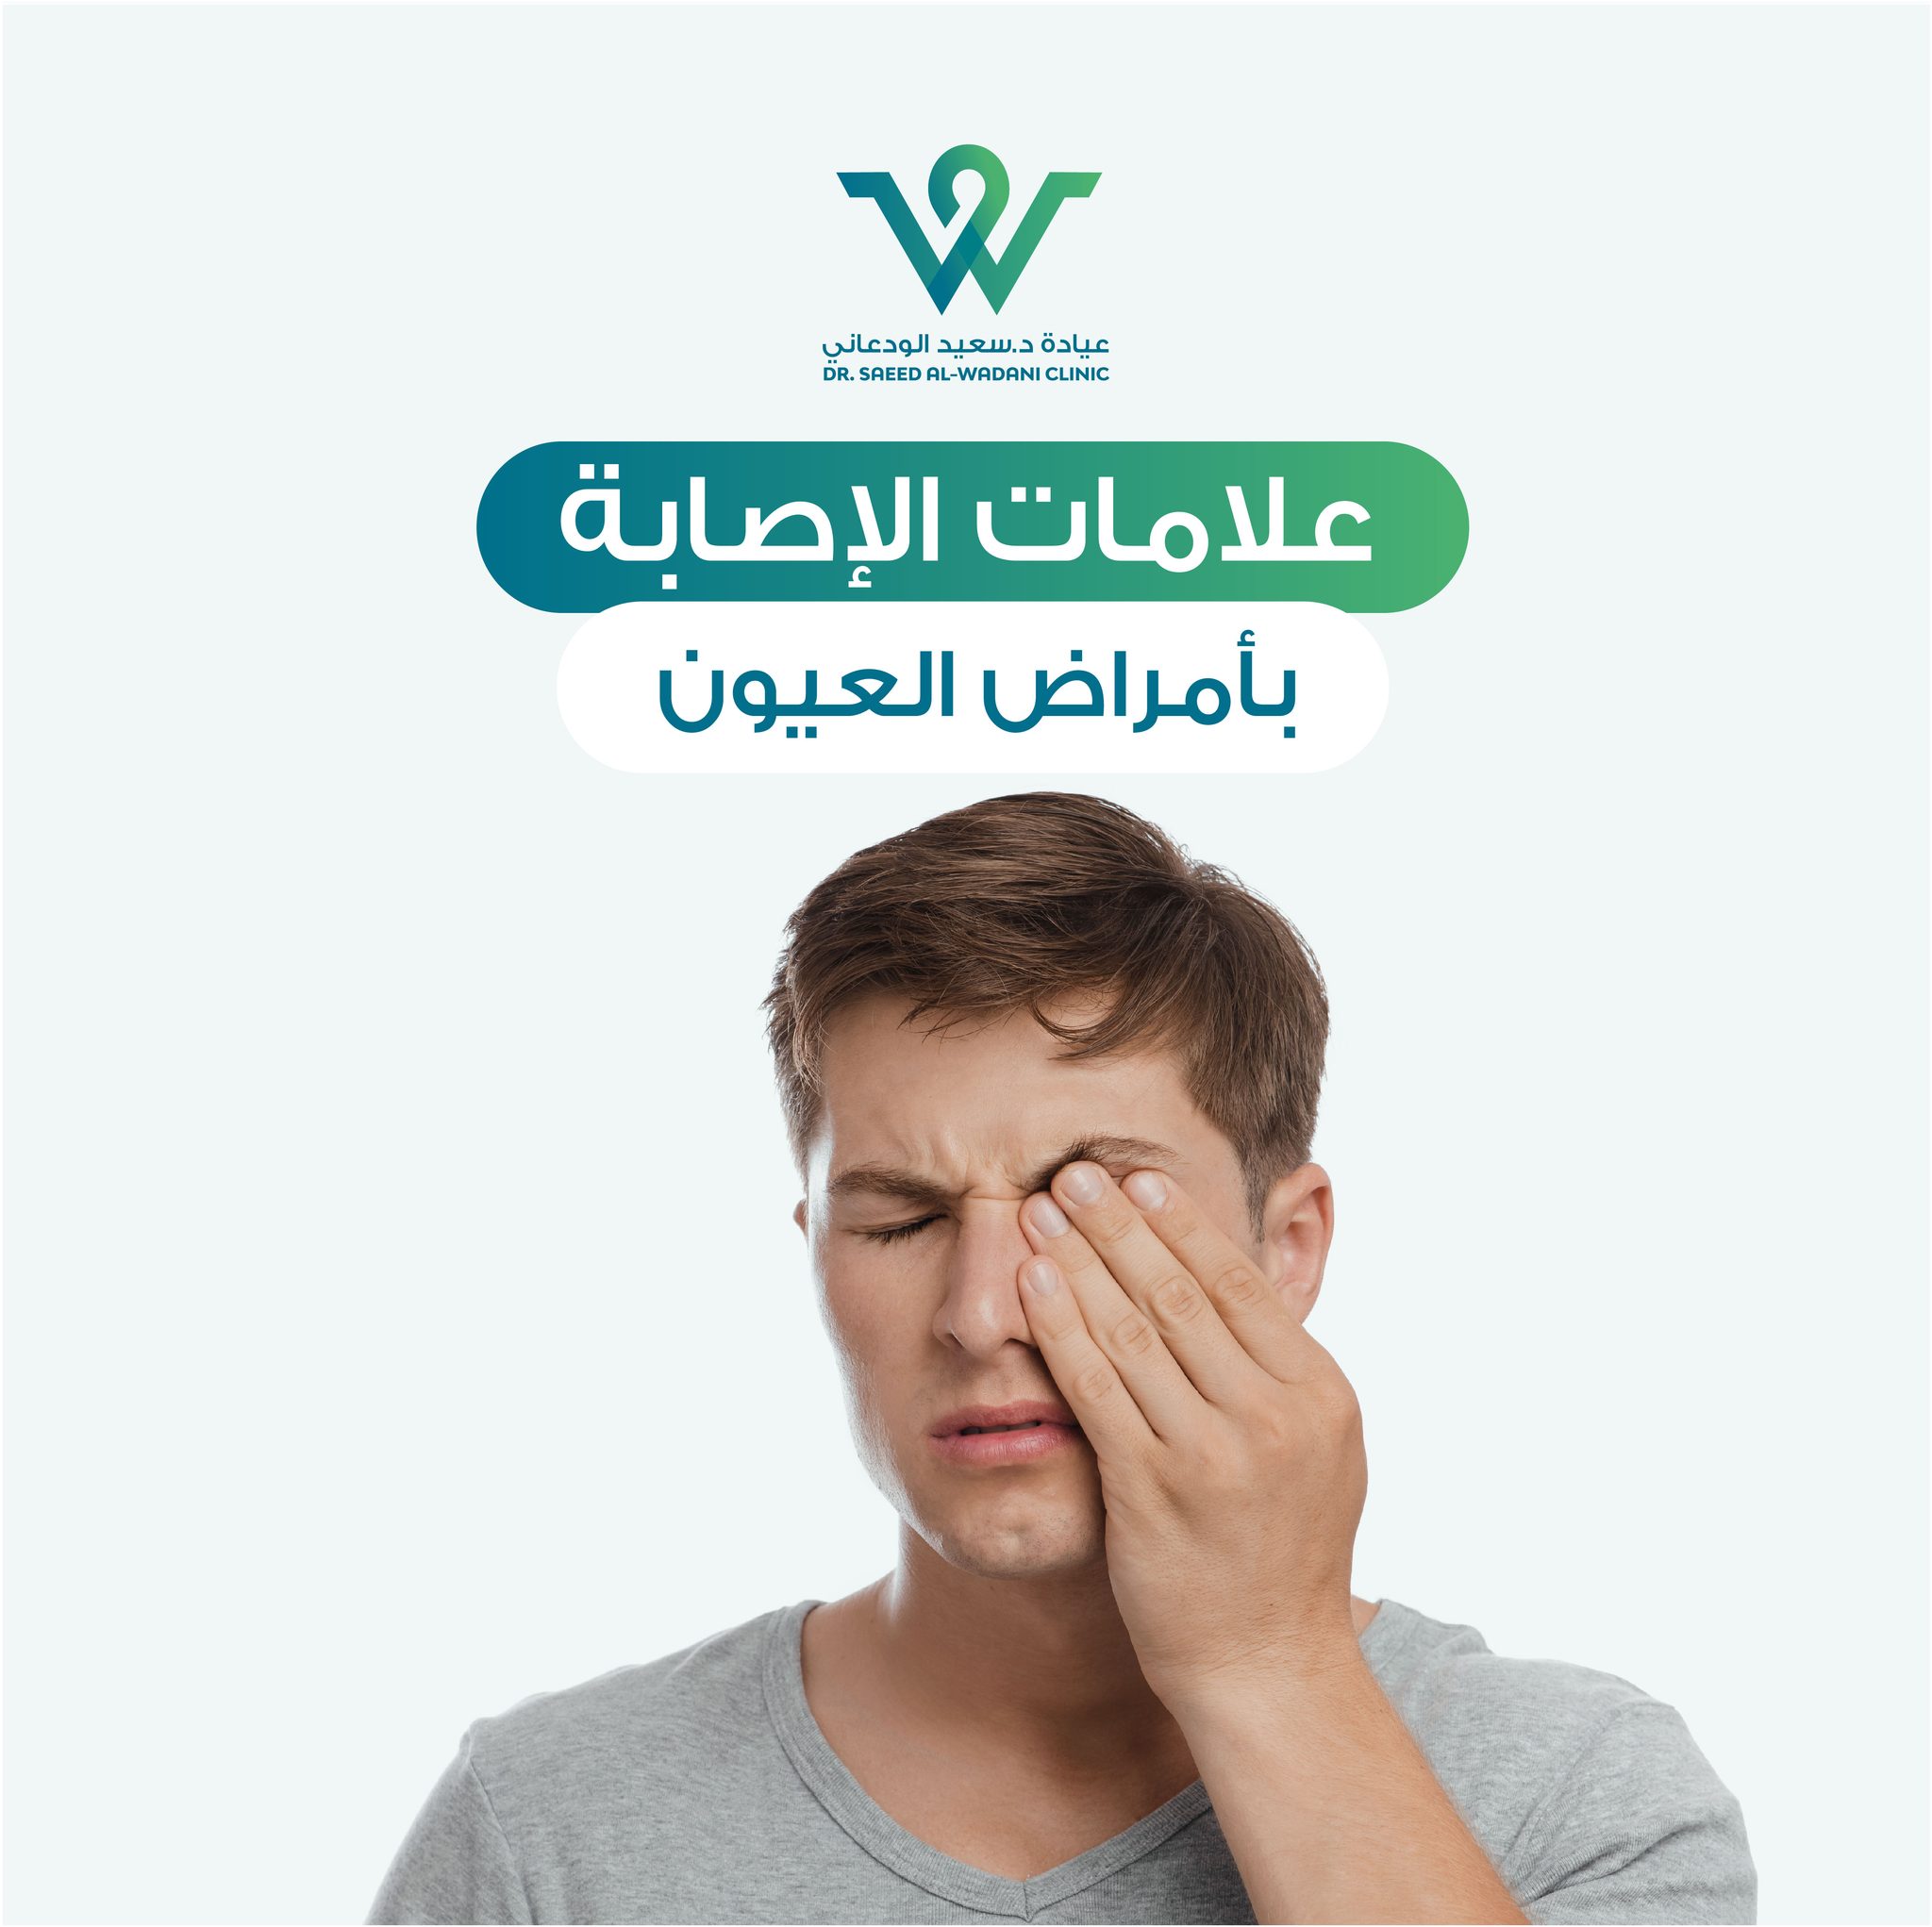 علامات الإصابة بأمراض العيون، تعتبر العيون من أهم أعضاء الجسم البشري، فهي النوافذ التي نطل منها على العالم.